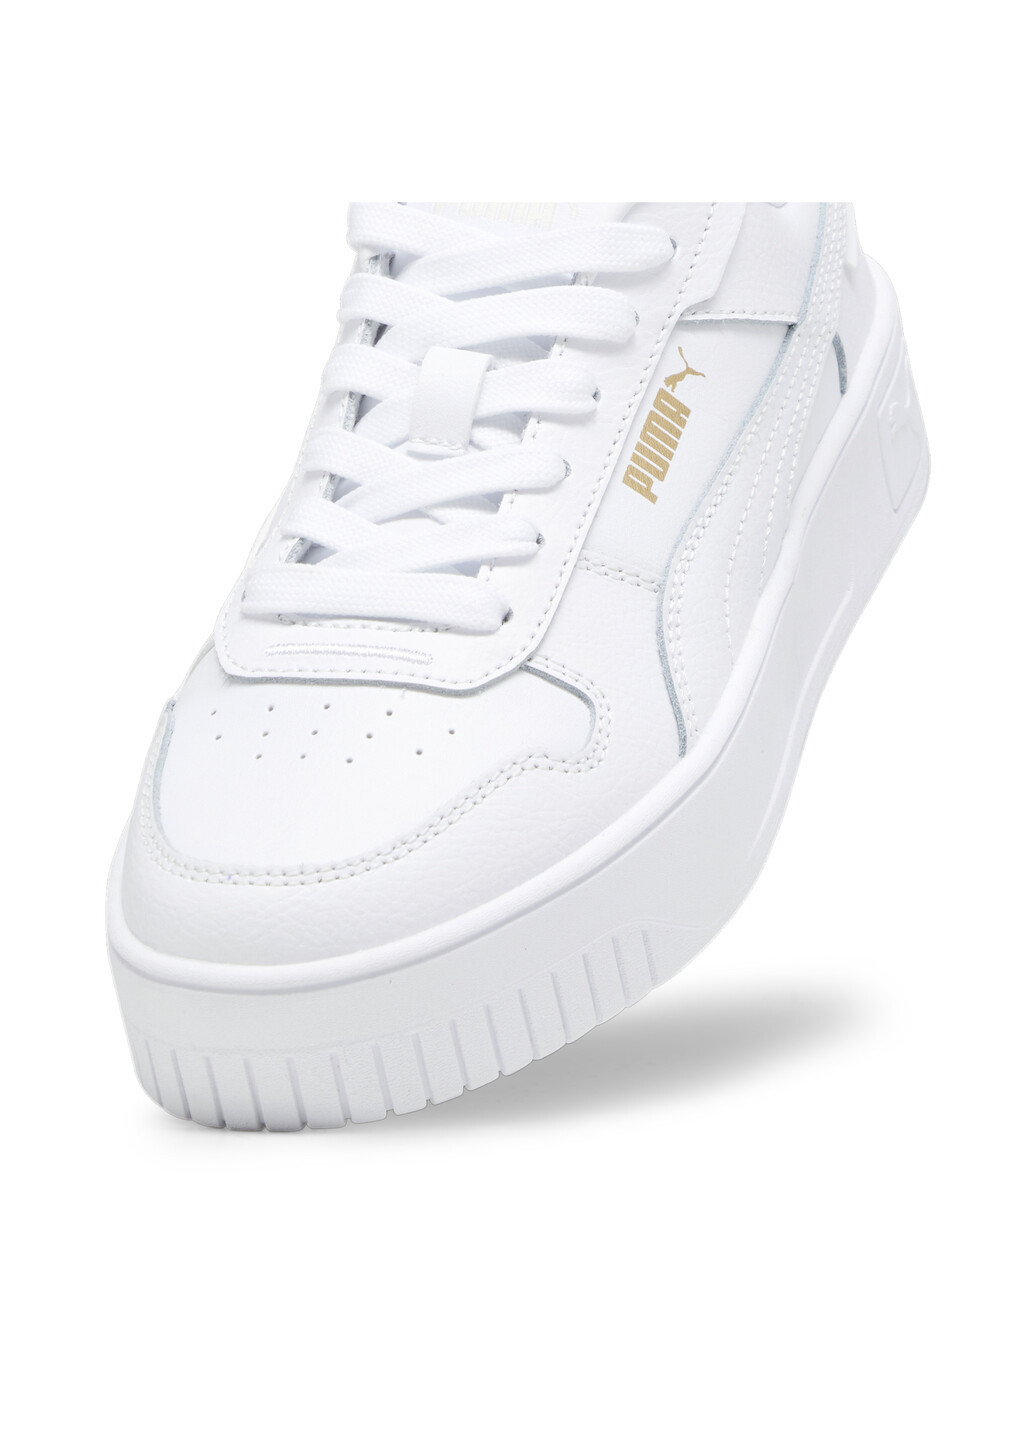 Білі всесезонні кеди carina street youth sneakers Puma